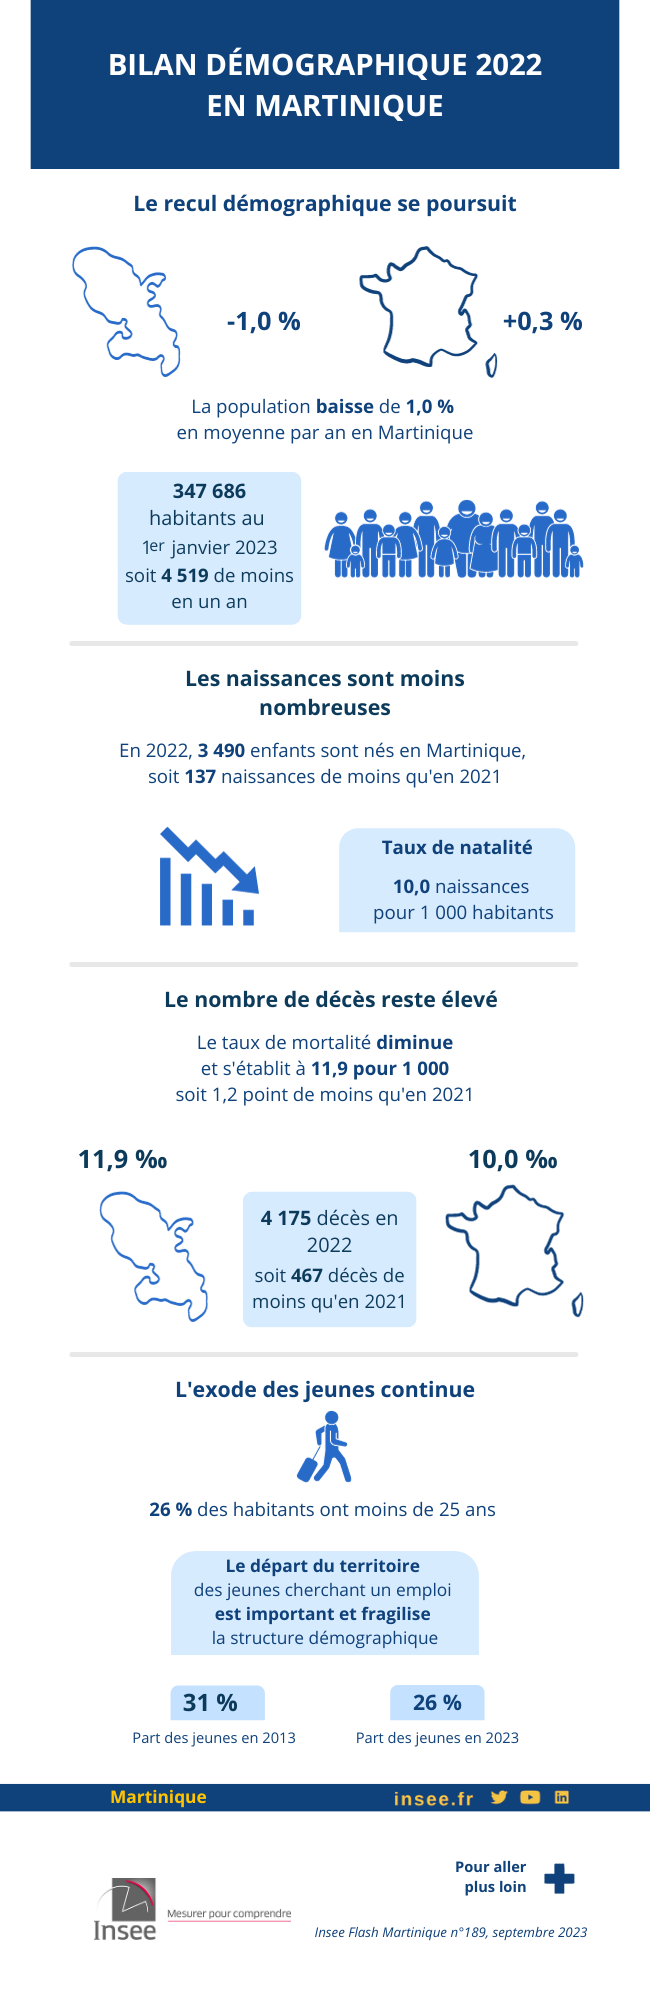 Bilan démographique 2022 en Martinique